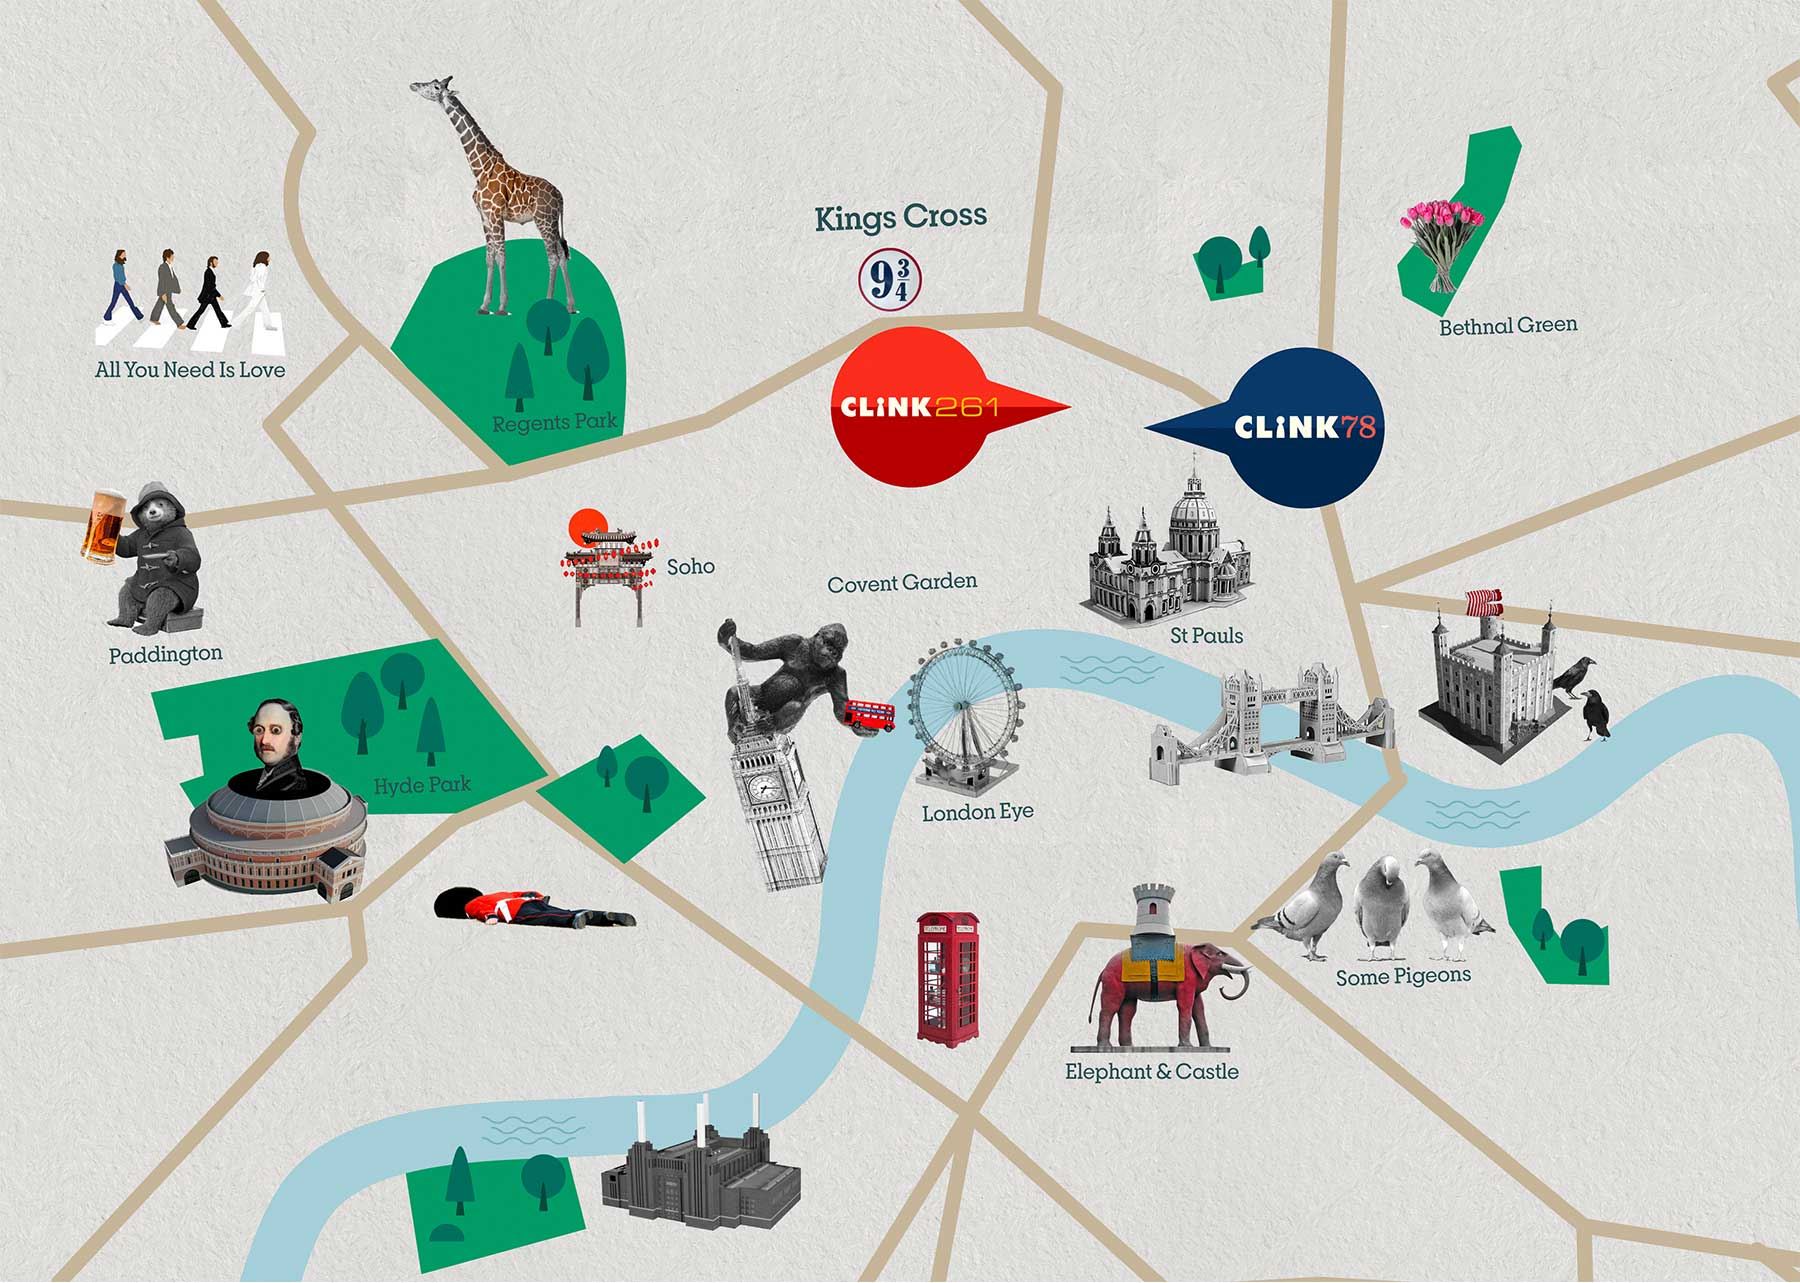 Le attrazioni di London City, insieme a Clink 261 e Clink 78 sulla mappa